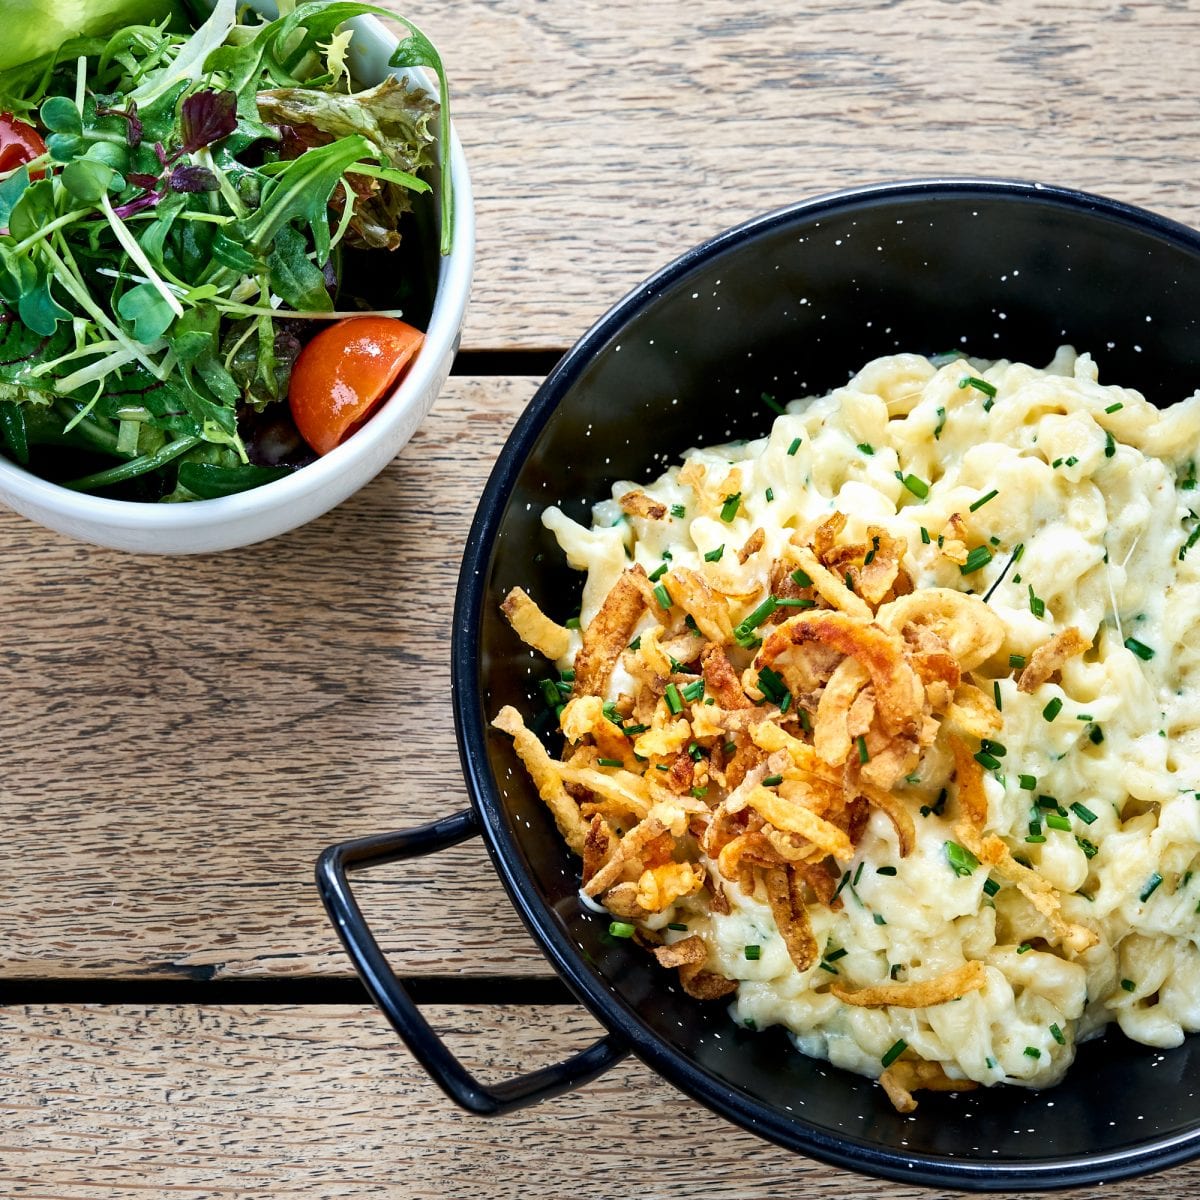 Kässpatzen mit Röstzwiebeln und Salat aus der Spezlwirtschaft München